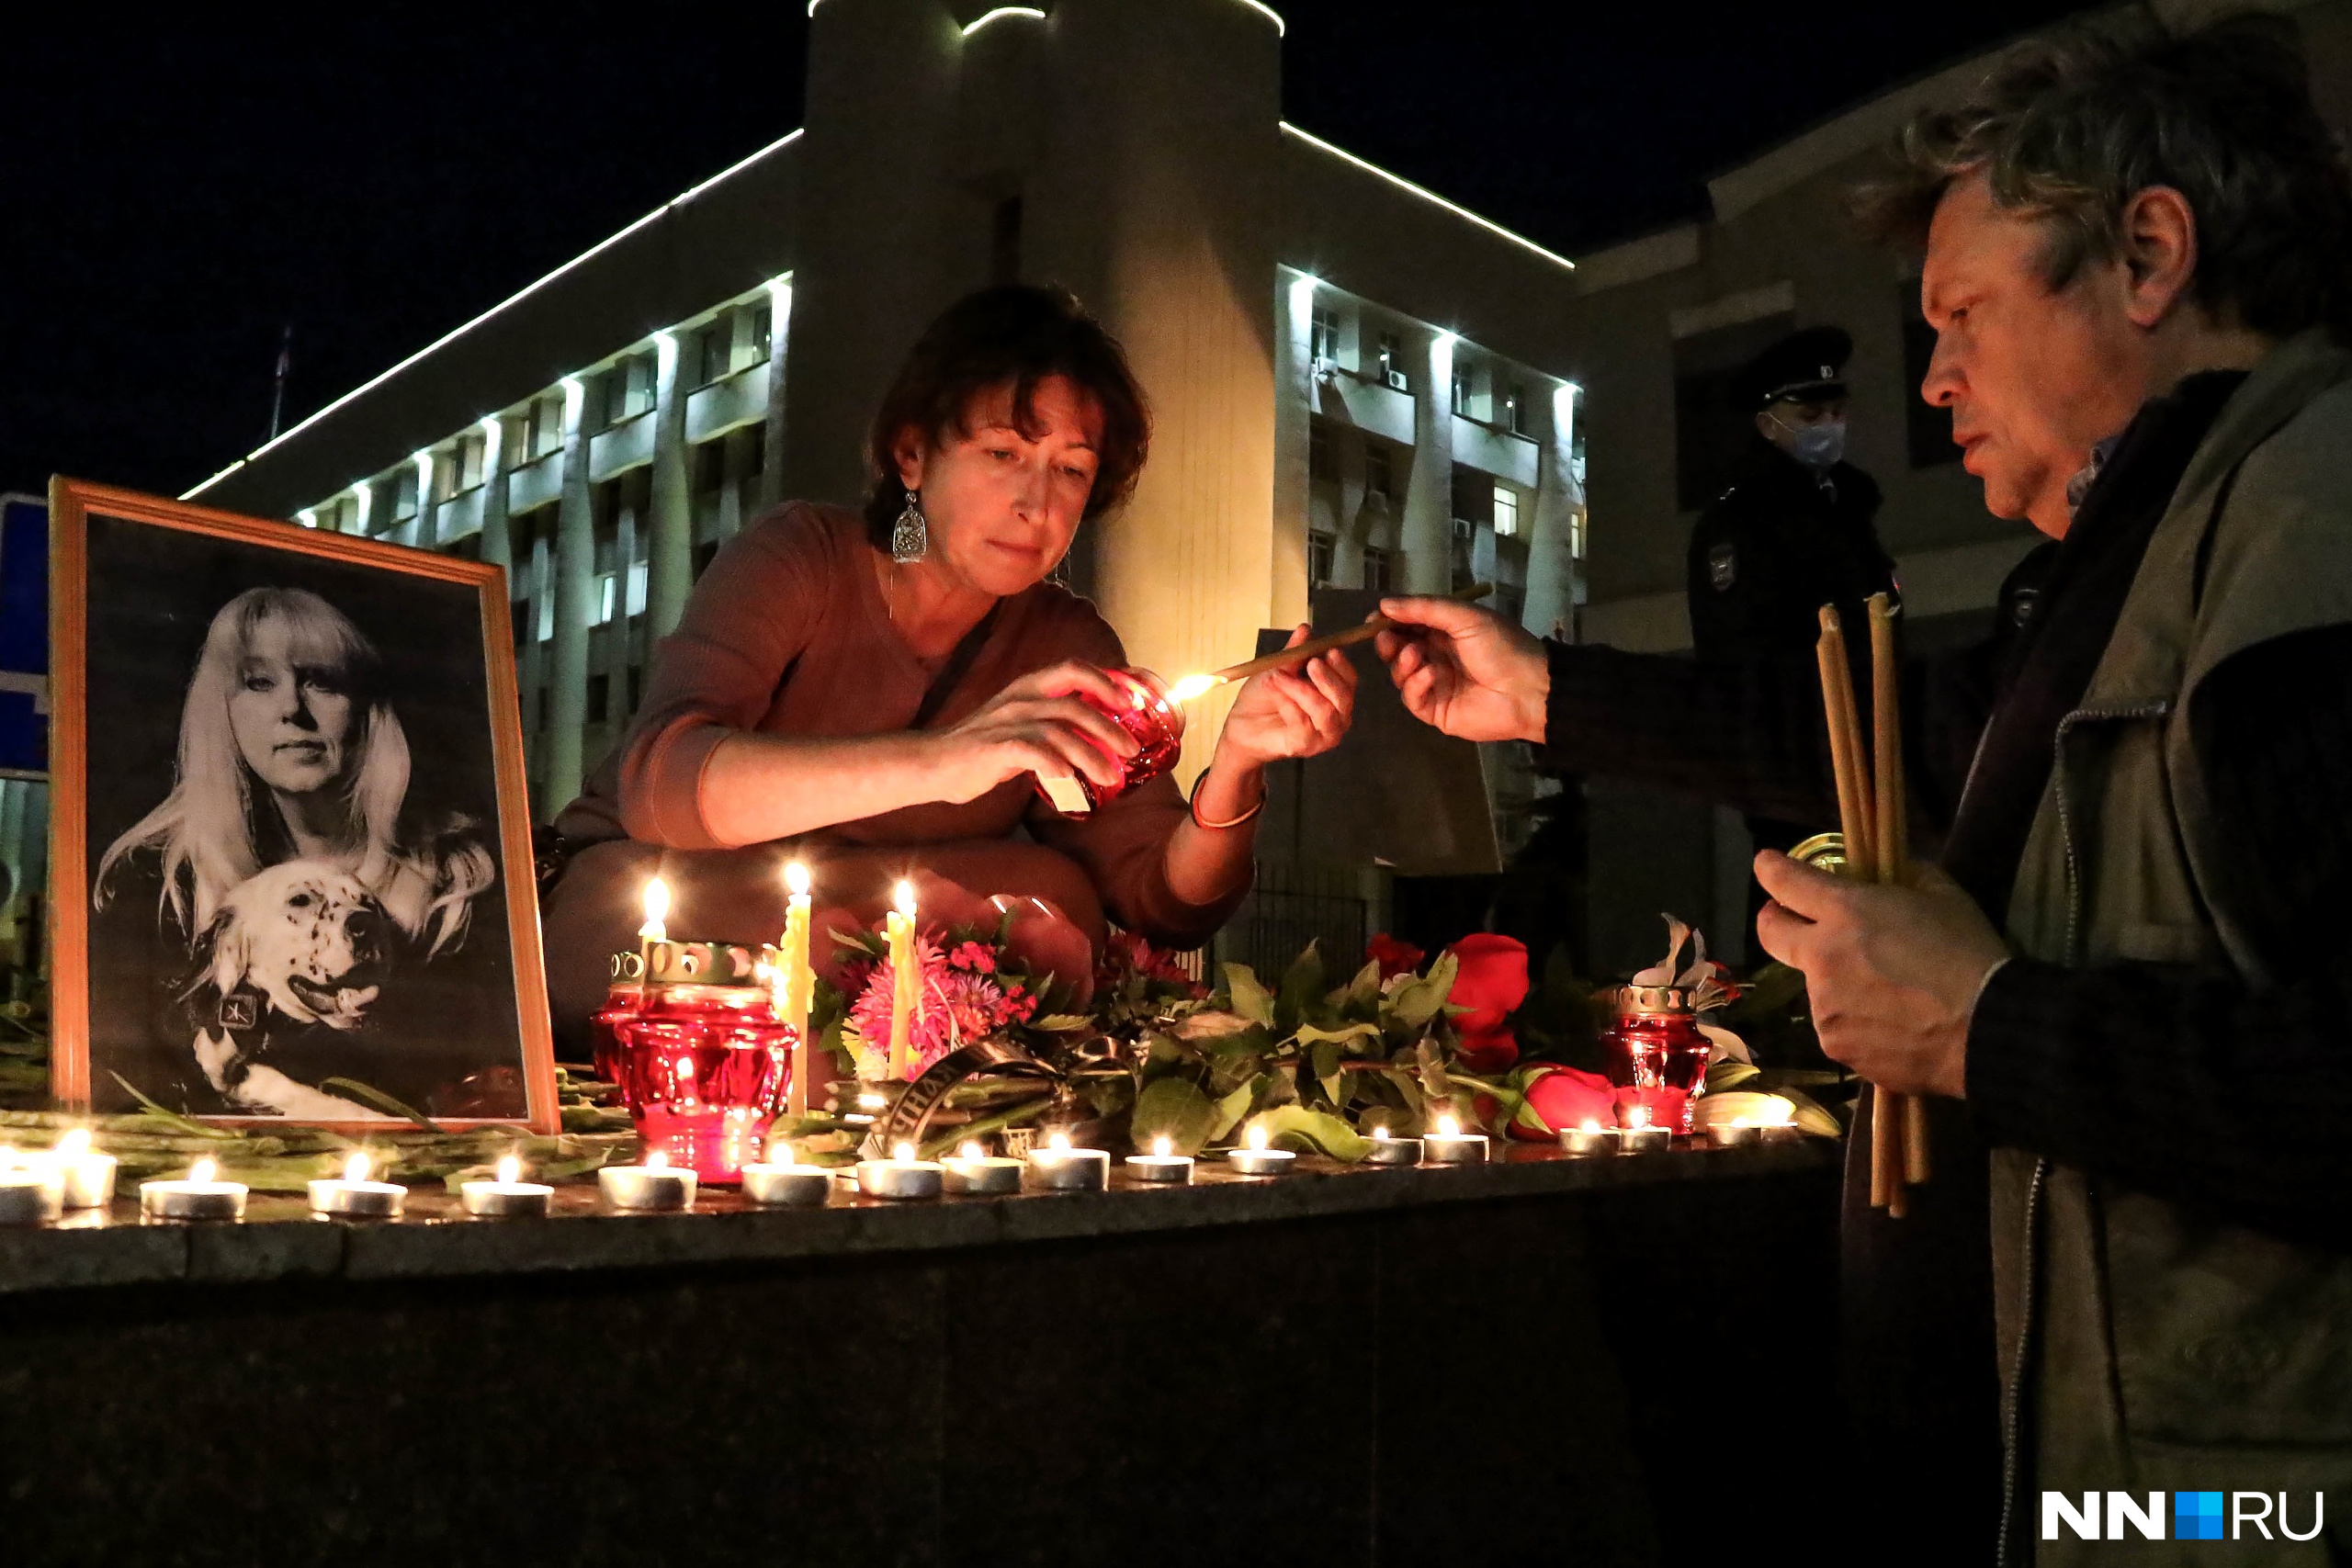 Трагедия года — смерть журналистки Ирины Славиной. Ее самоубийство 2 октября без преувеличения потрясло весь мир